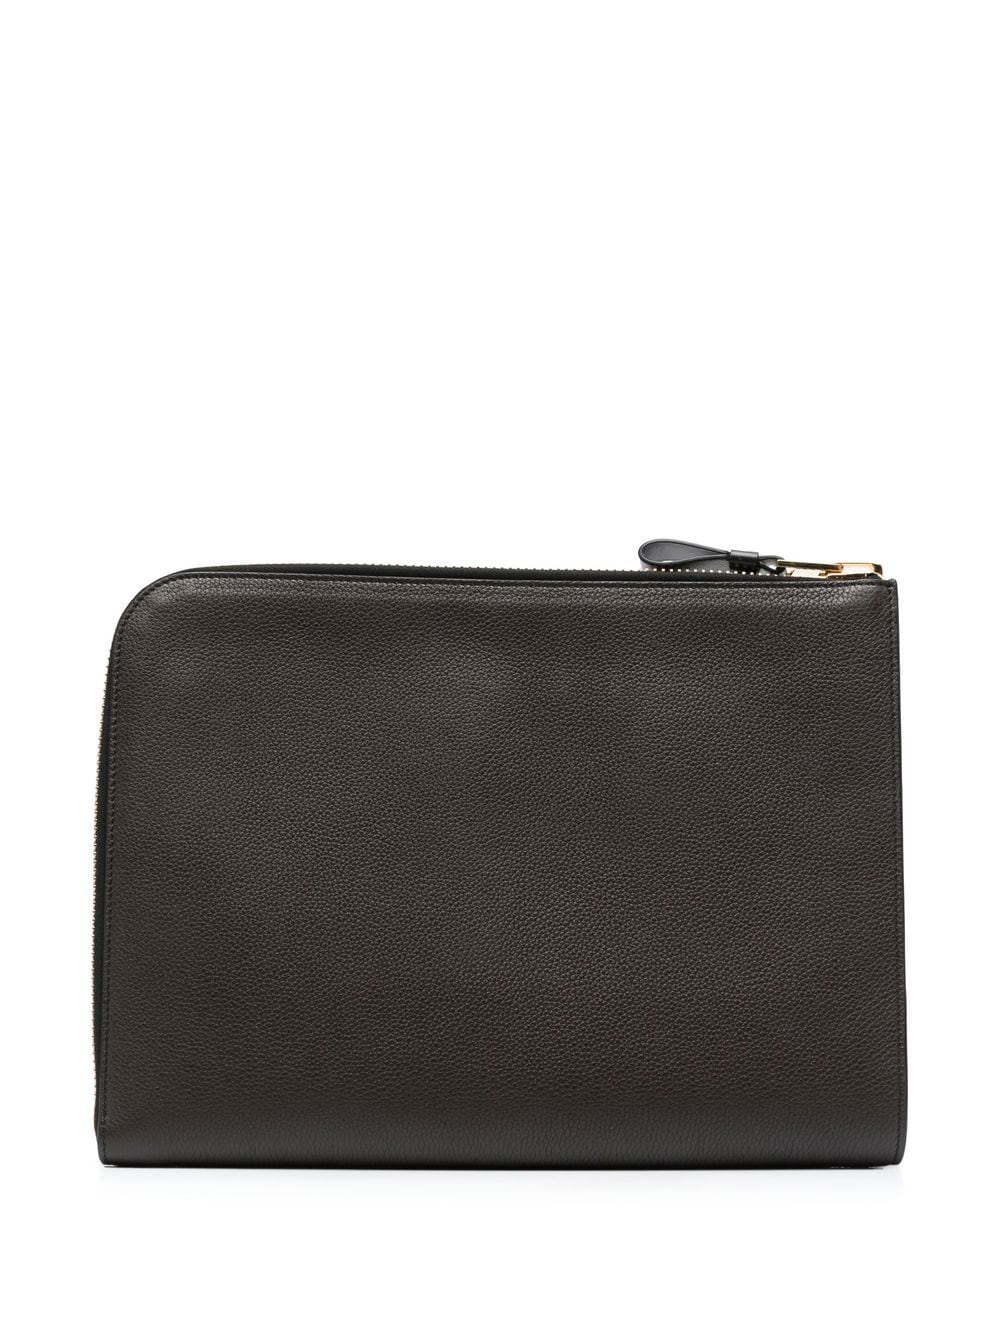 Shop Tom Ford Zip-around Leather Case In Braun